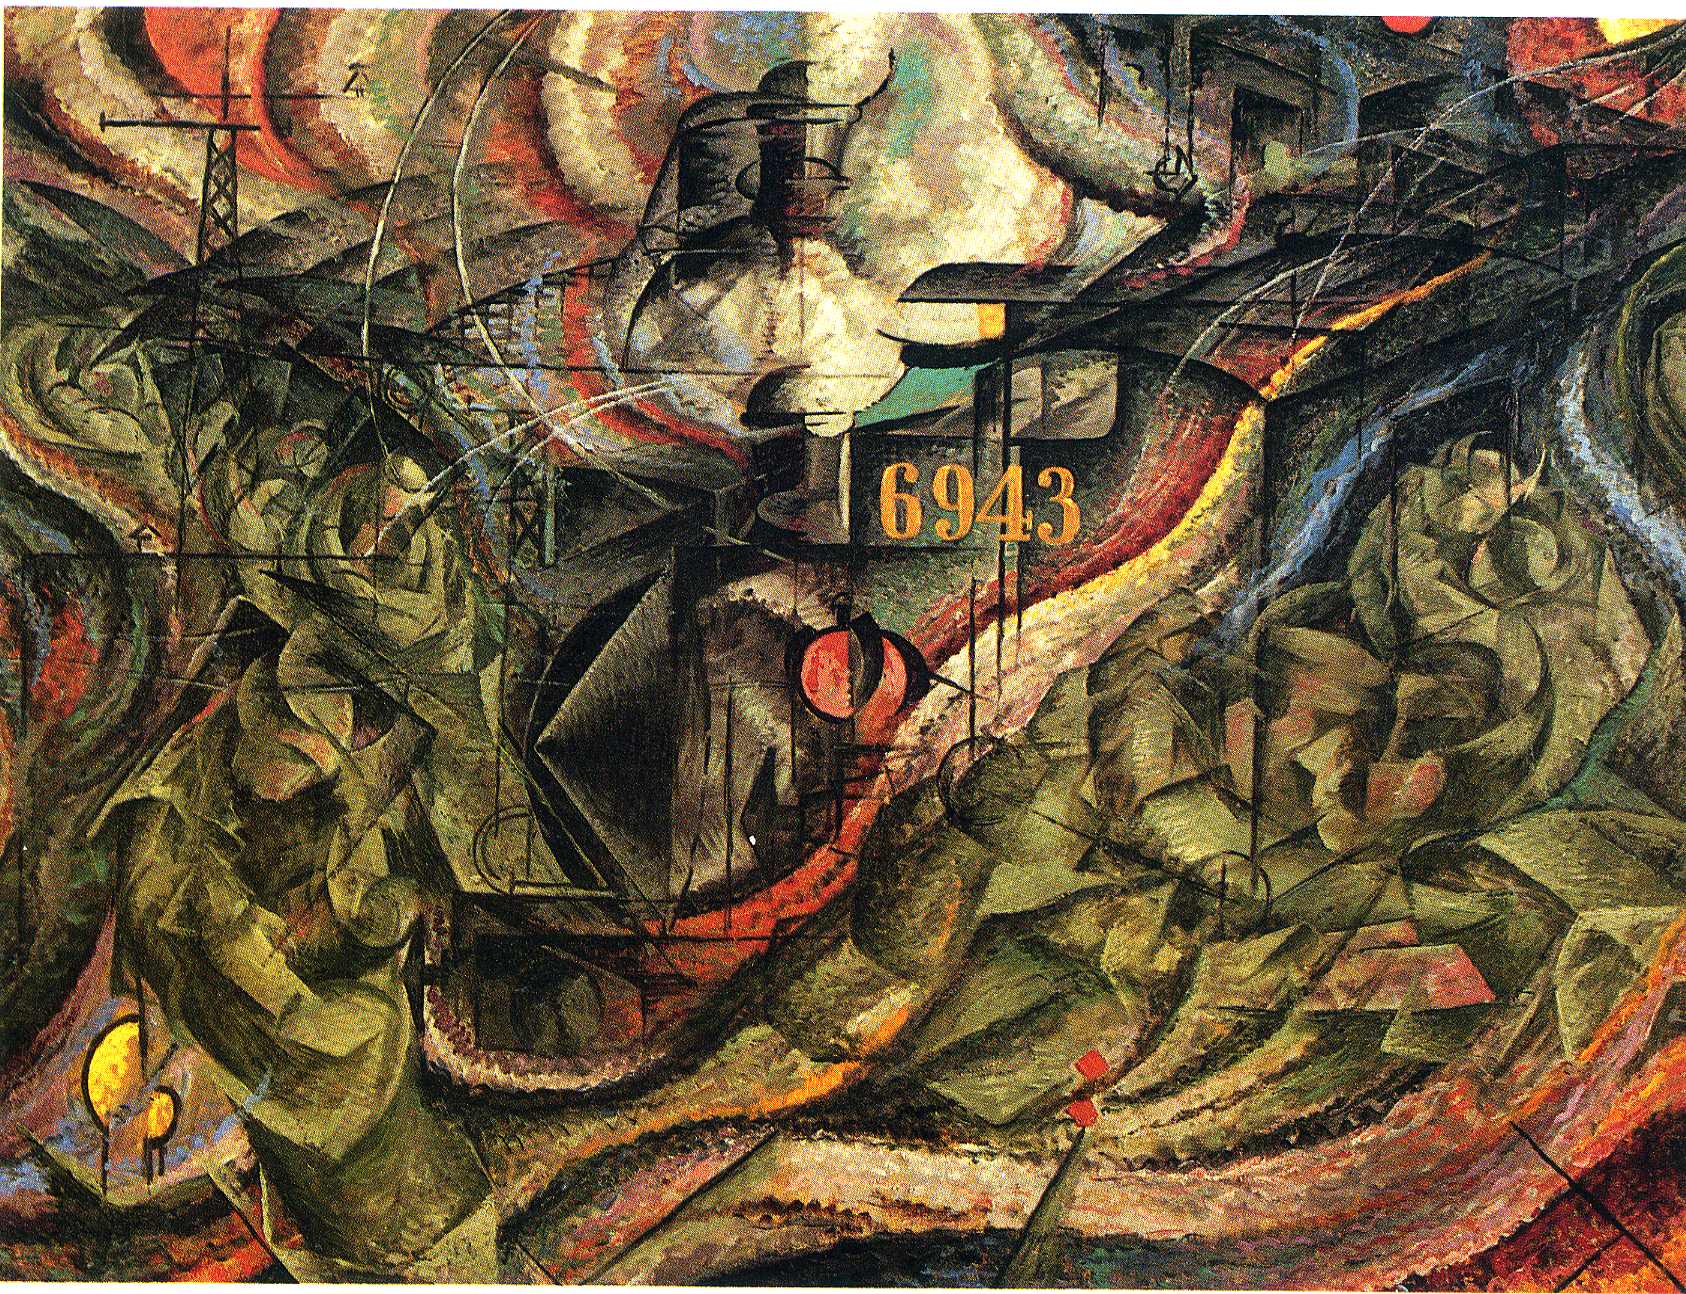 Stan Umysłu I: Pożegnania by Umberto Boccioni - 1911 - 70.5 x 96.2 cm 